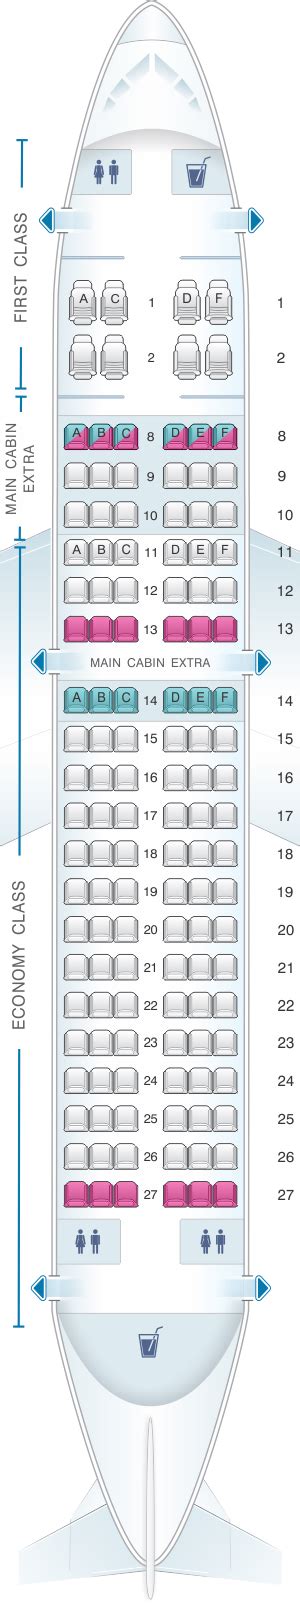 Airbus A319 Seating Chart Alexia Lorraine